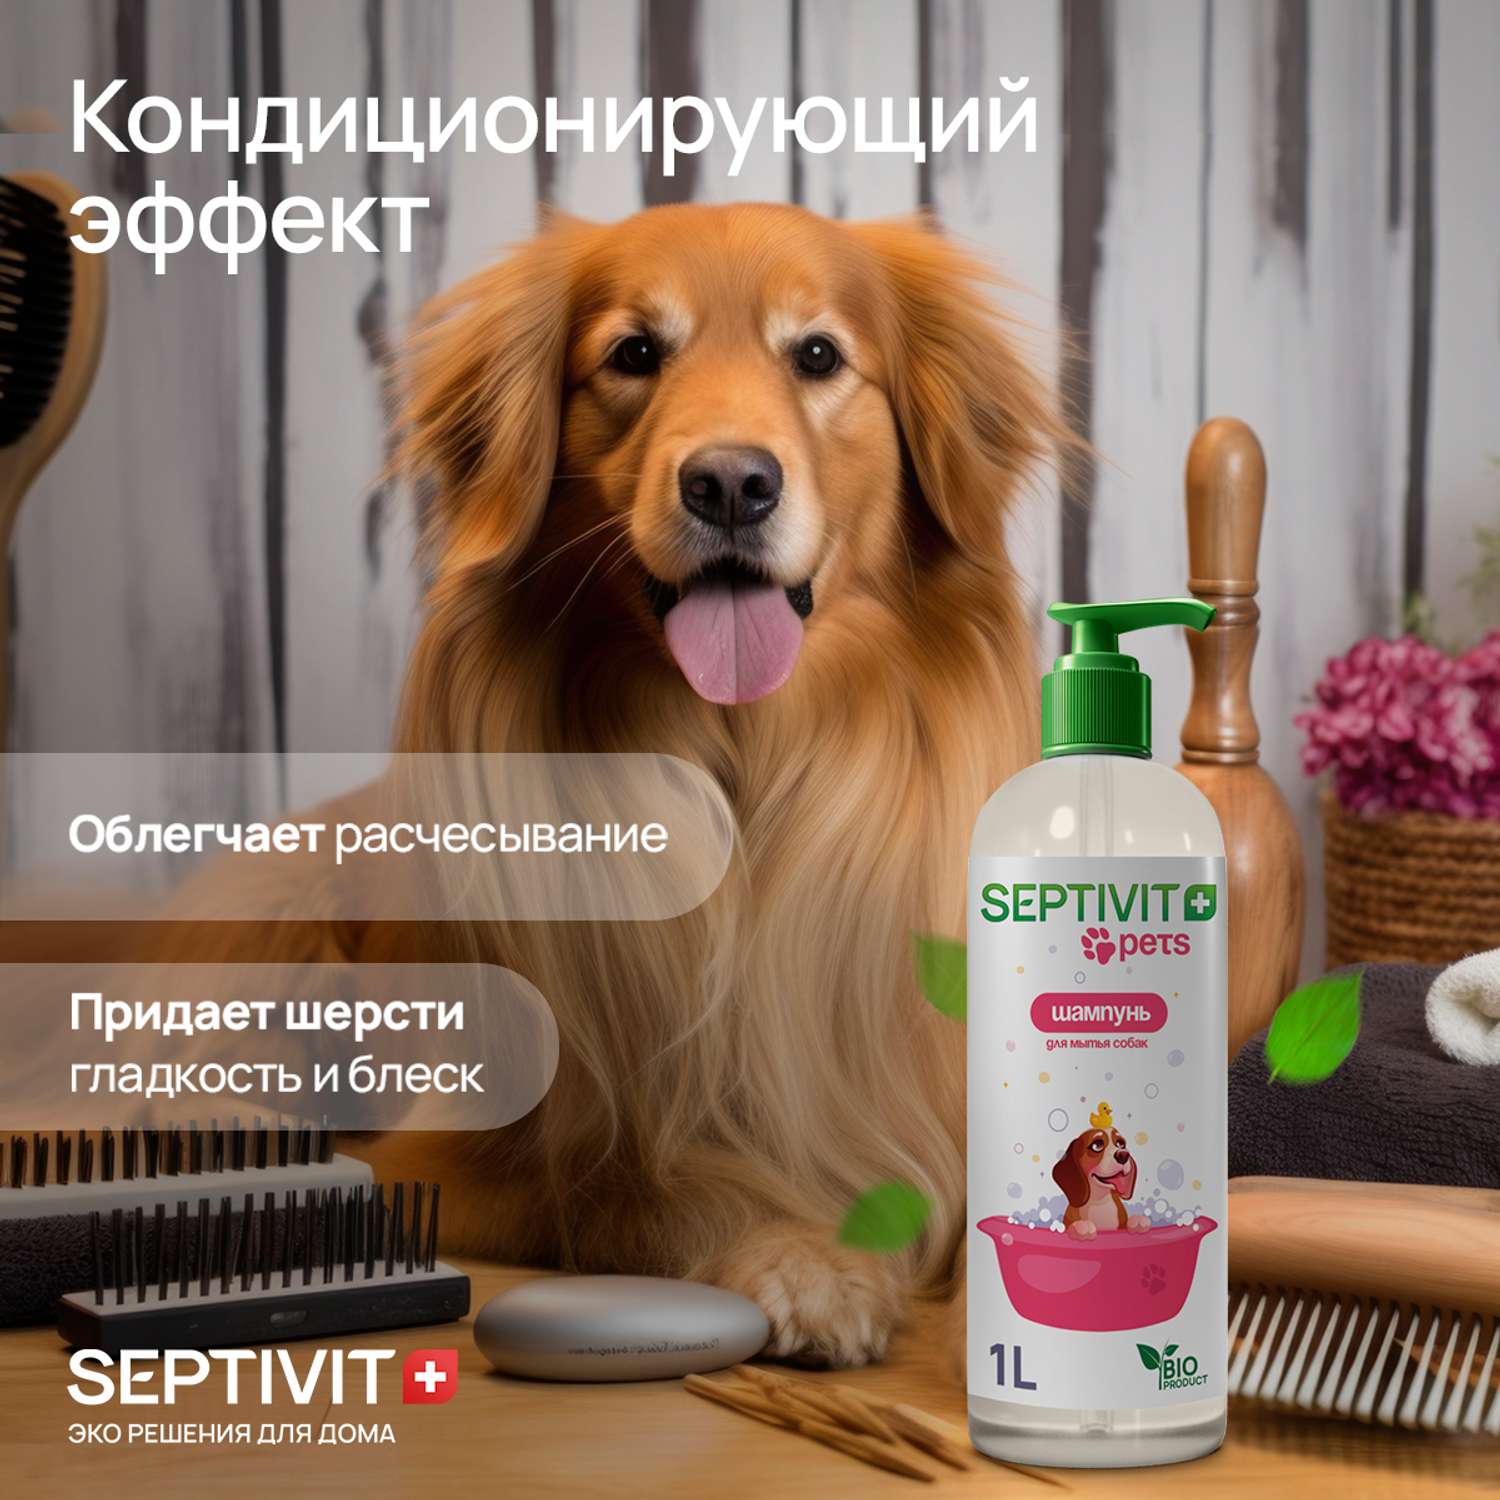 Шампунь для собак SEPTIVIT Premium 1 л - фото 2